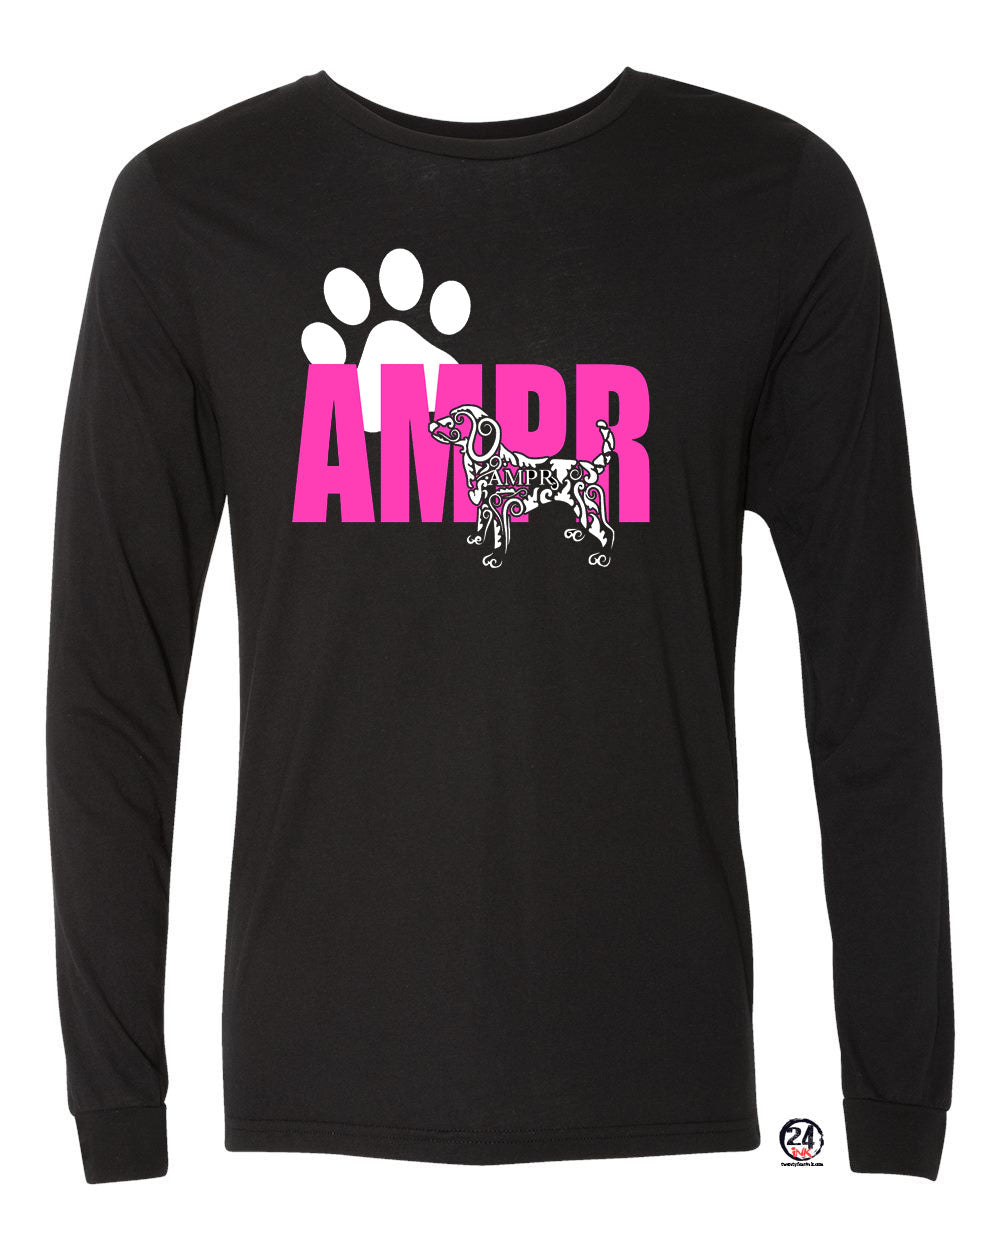 Ampr design 1 Long Sleeve Shirt